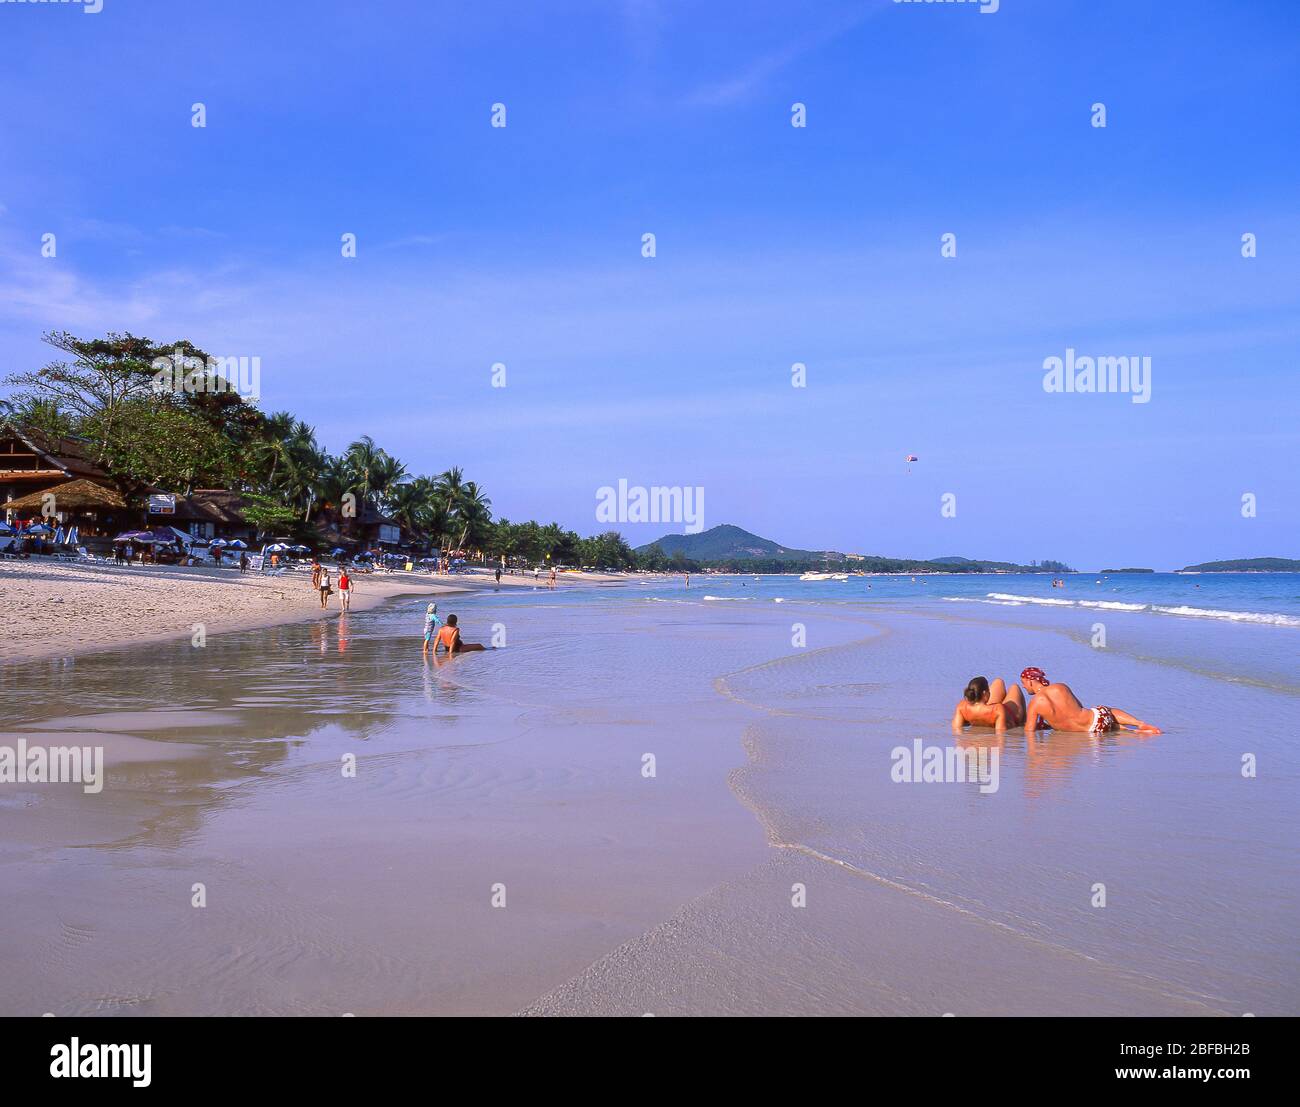 Chaweng Beach, Bo Phut, Koh Samui, Surat Thani Province, Kingdom of Thailand Stock Photo